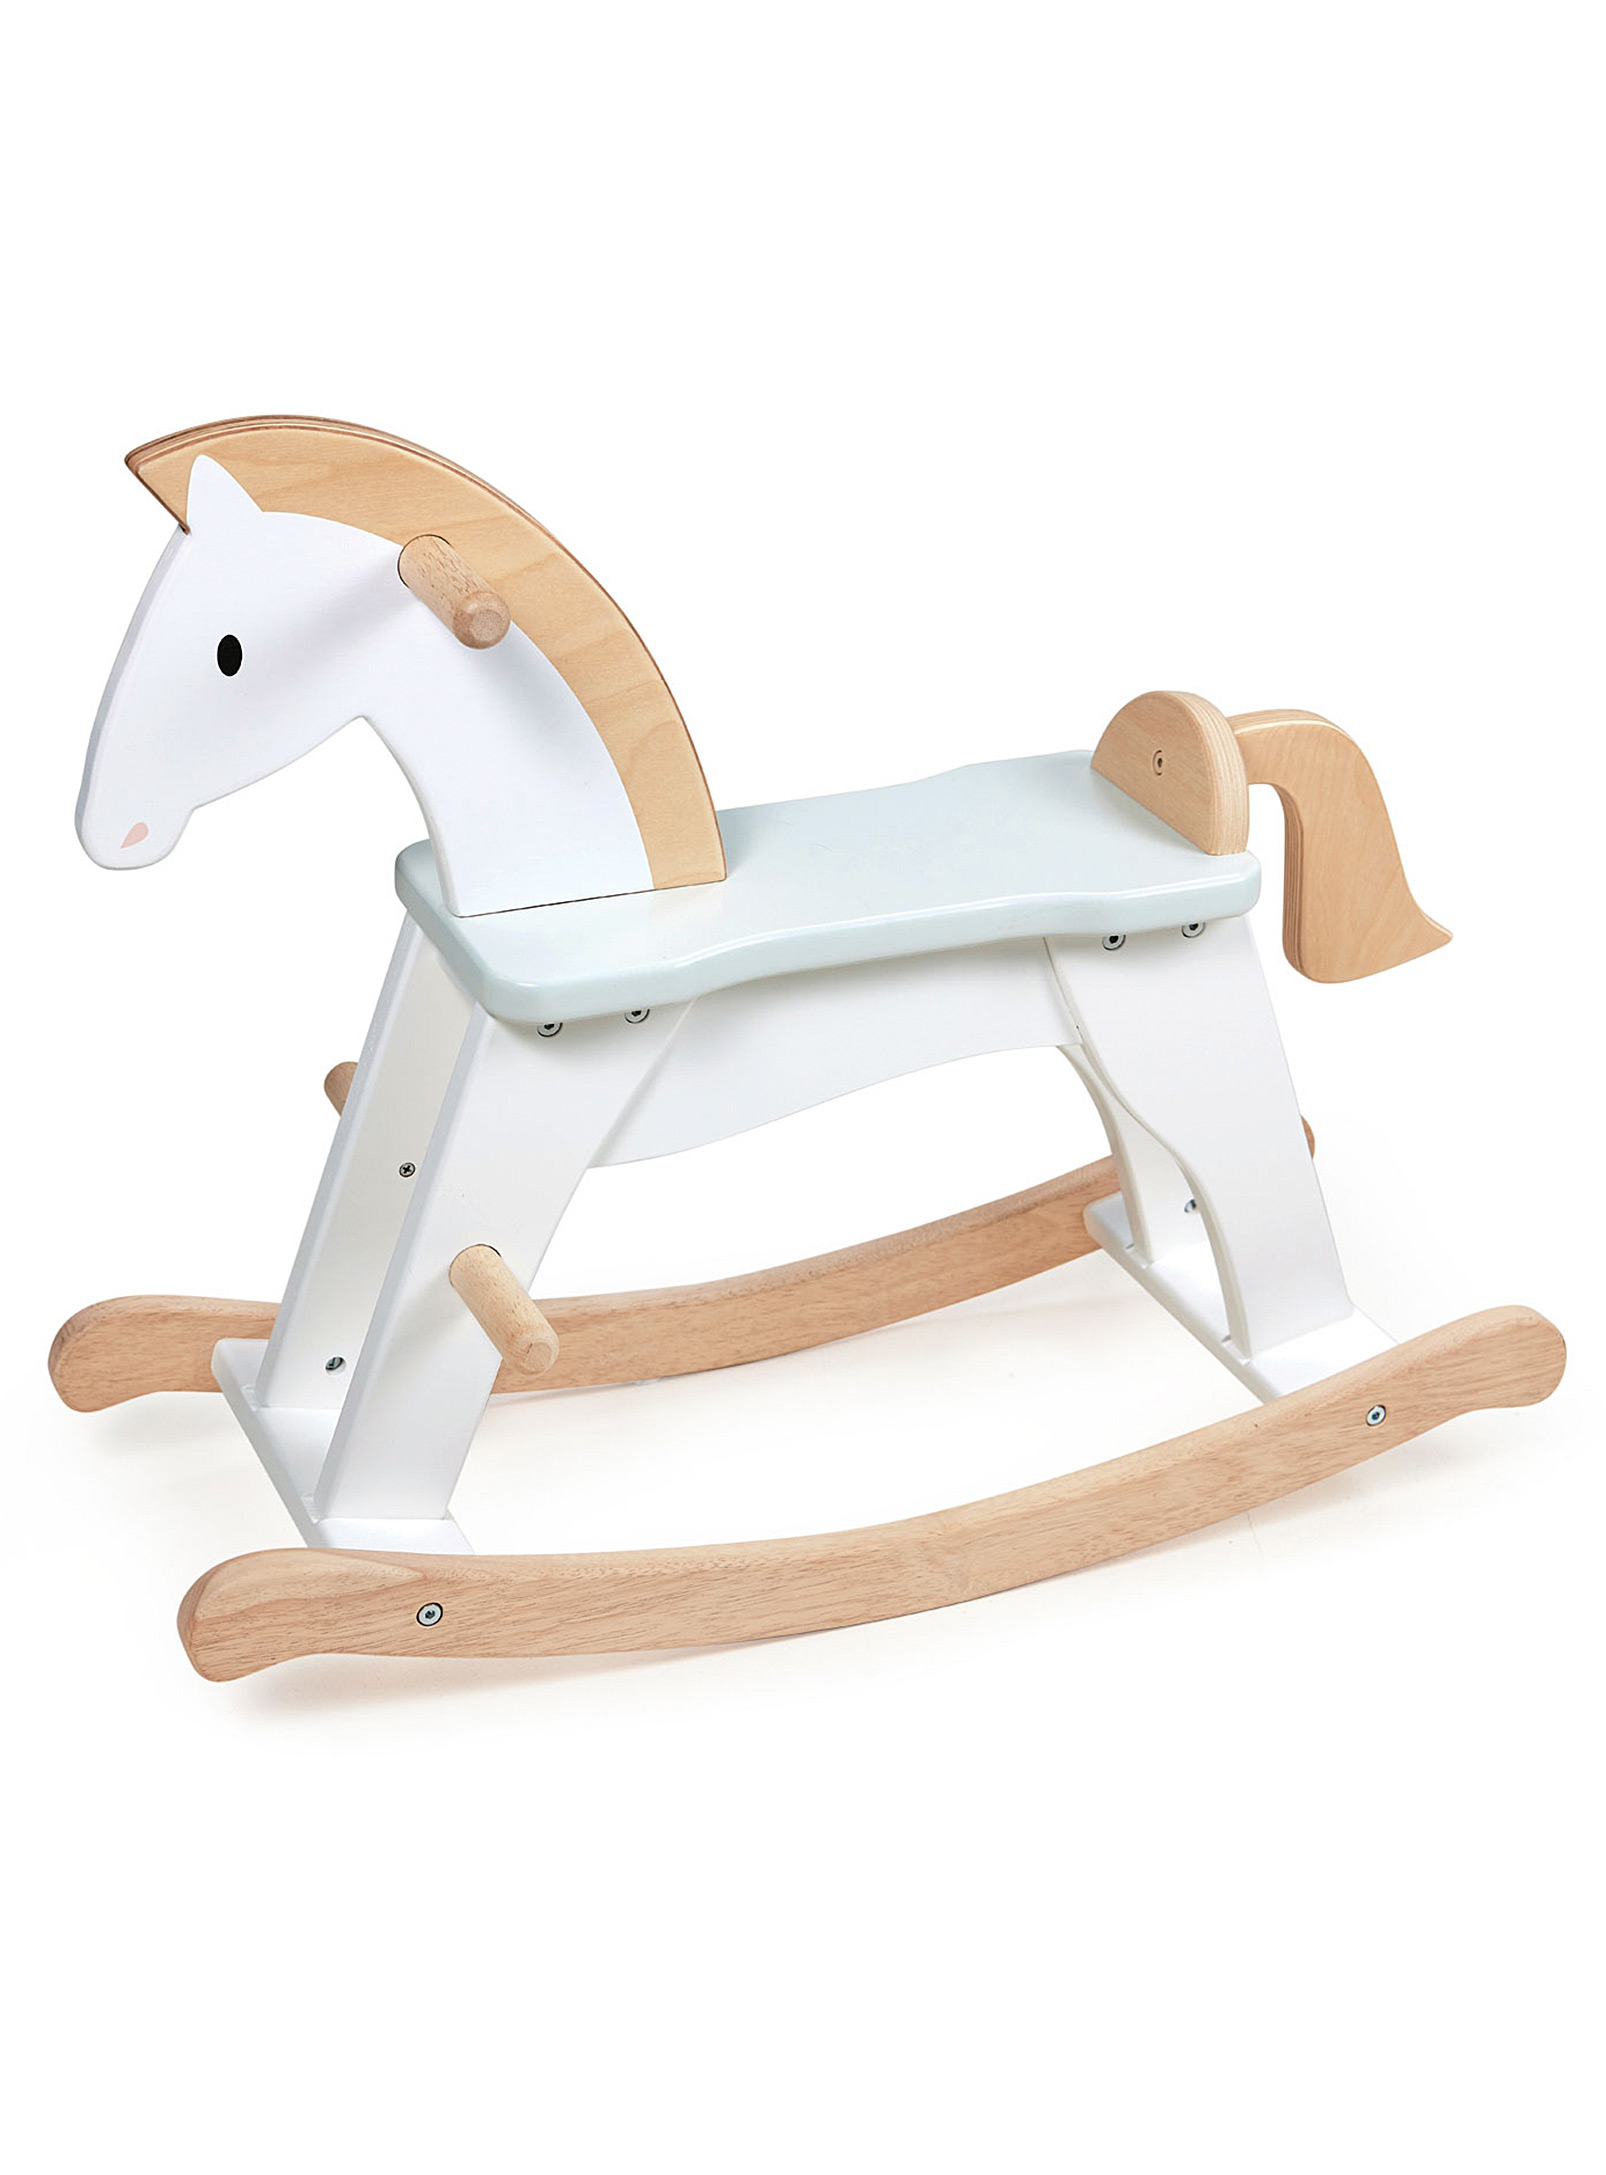 Tender Leaf Toys - Wooden rocking horse